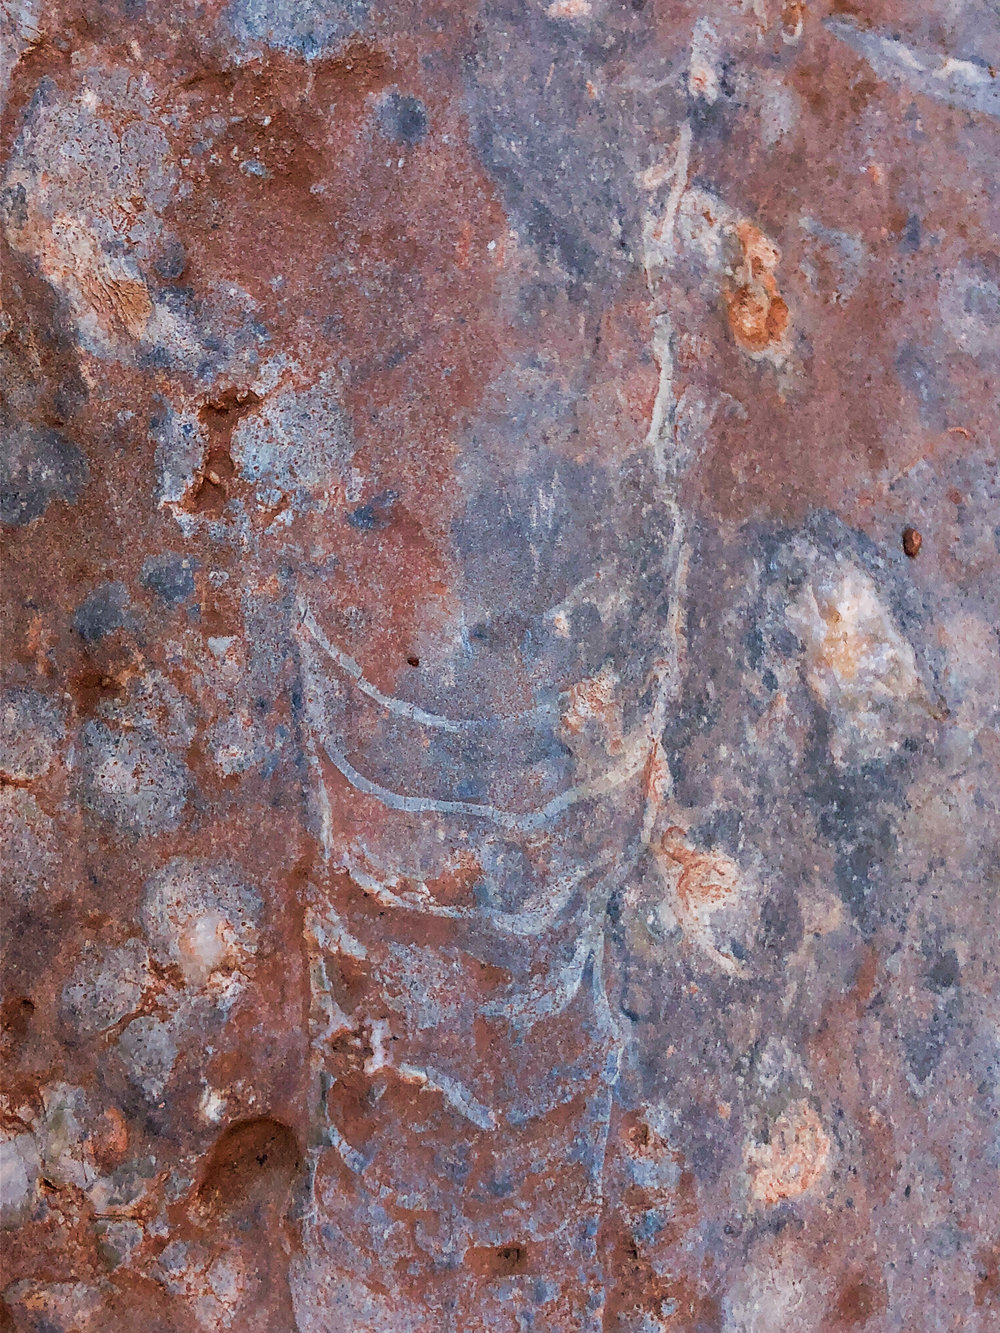 A nautiloid fossil